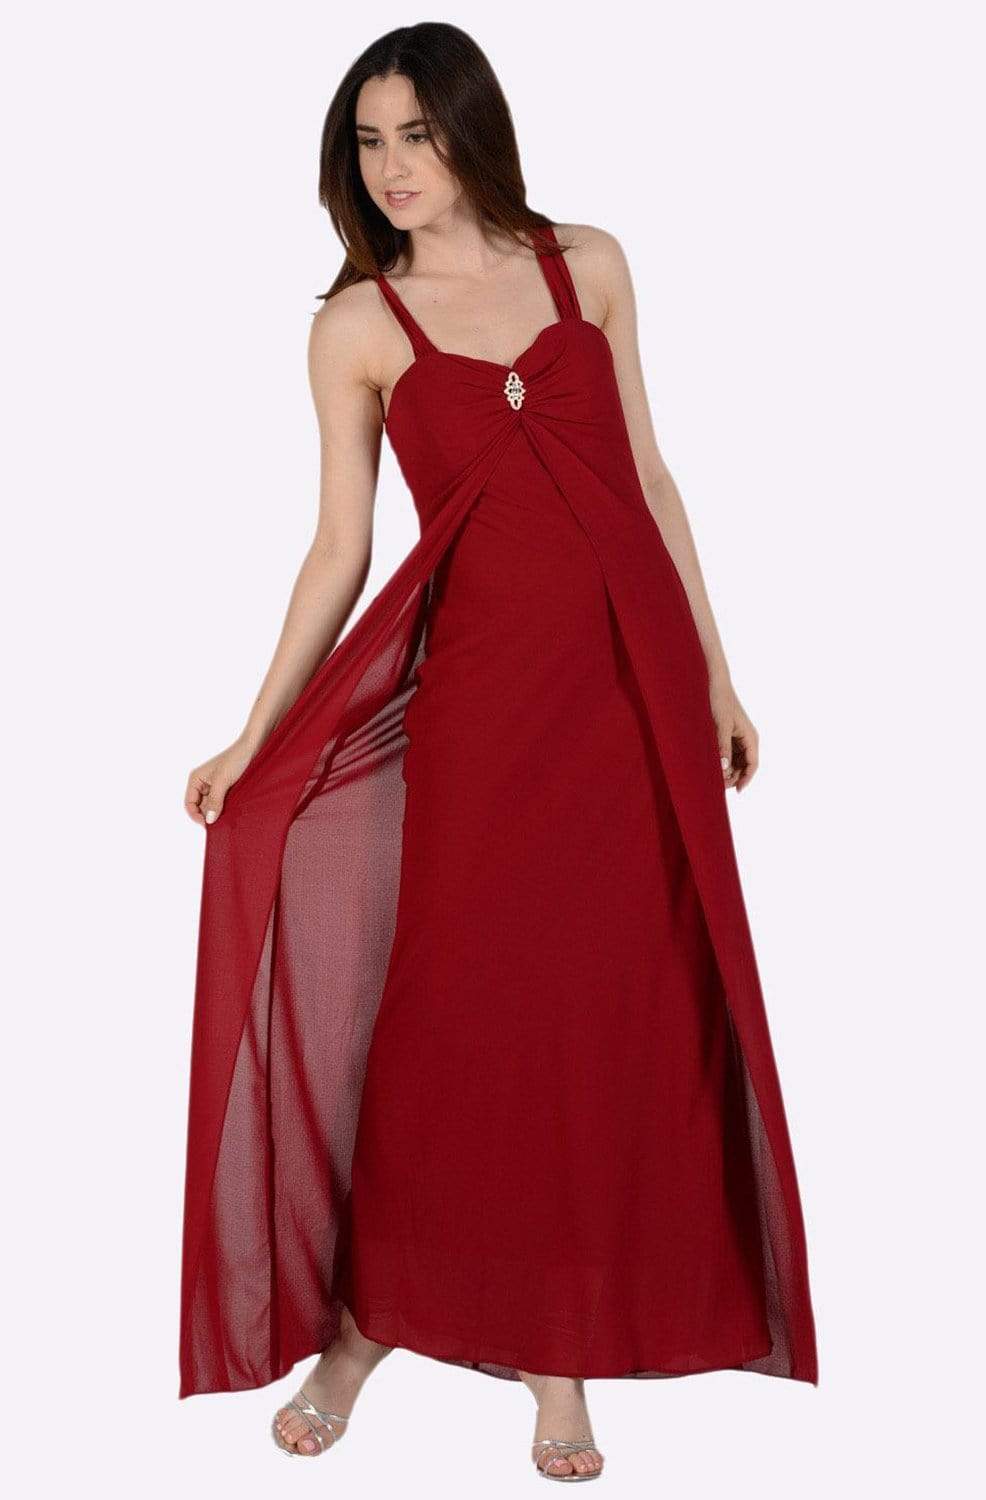 Lace overlay | Larimeloom Wedding Dress | Shop online